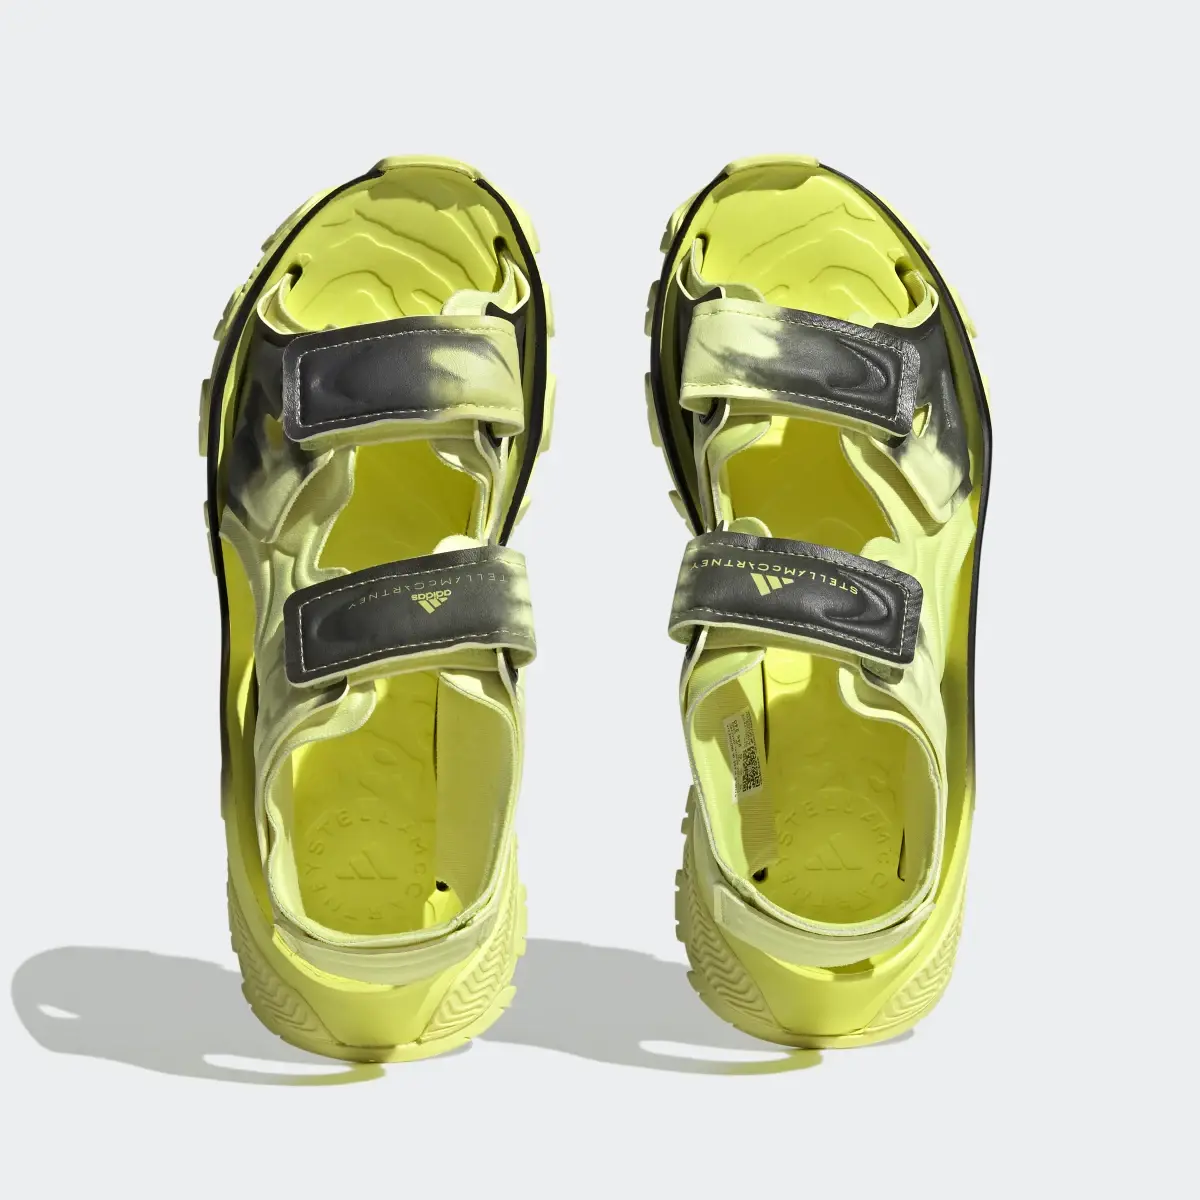 Adidas by Stella McCartney Sandals. 3